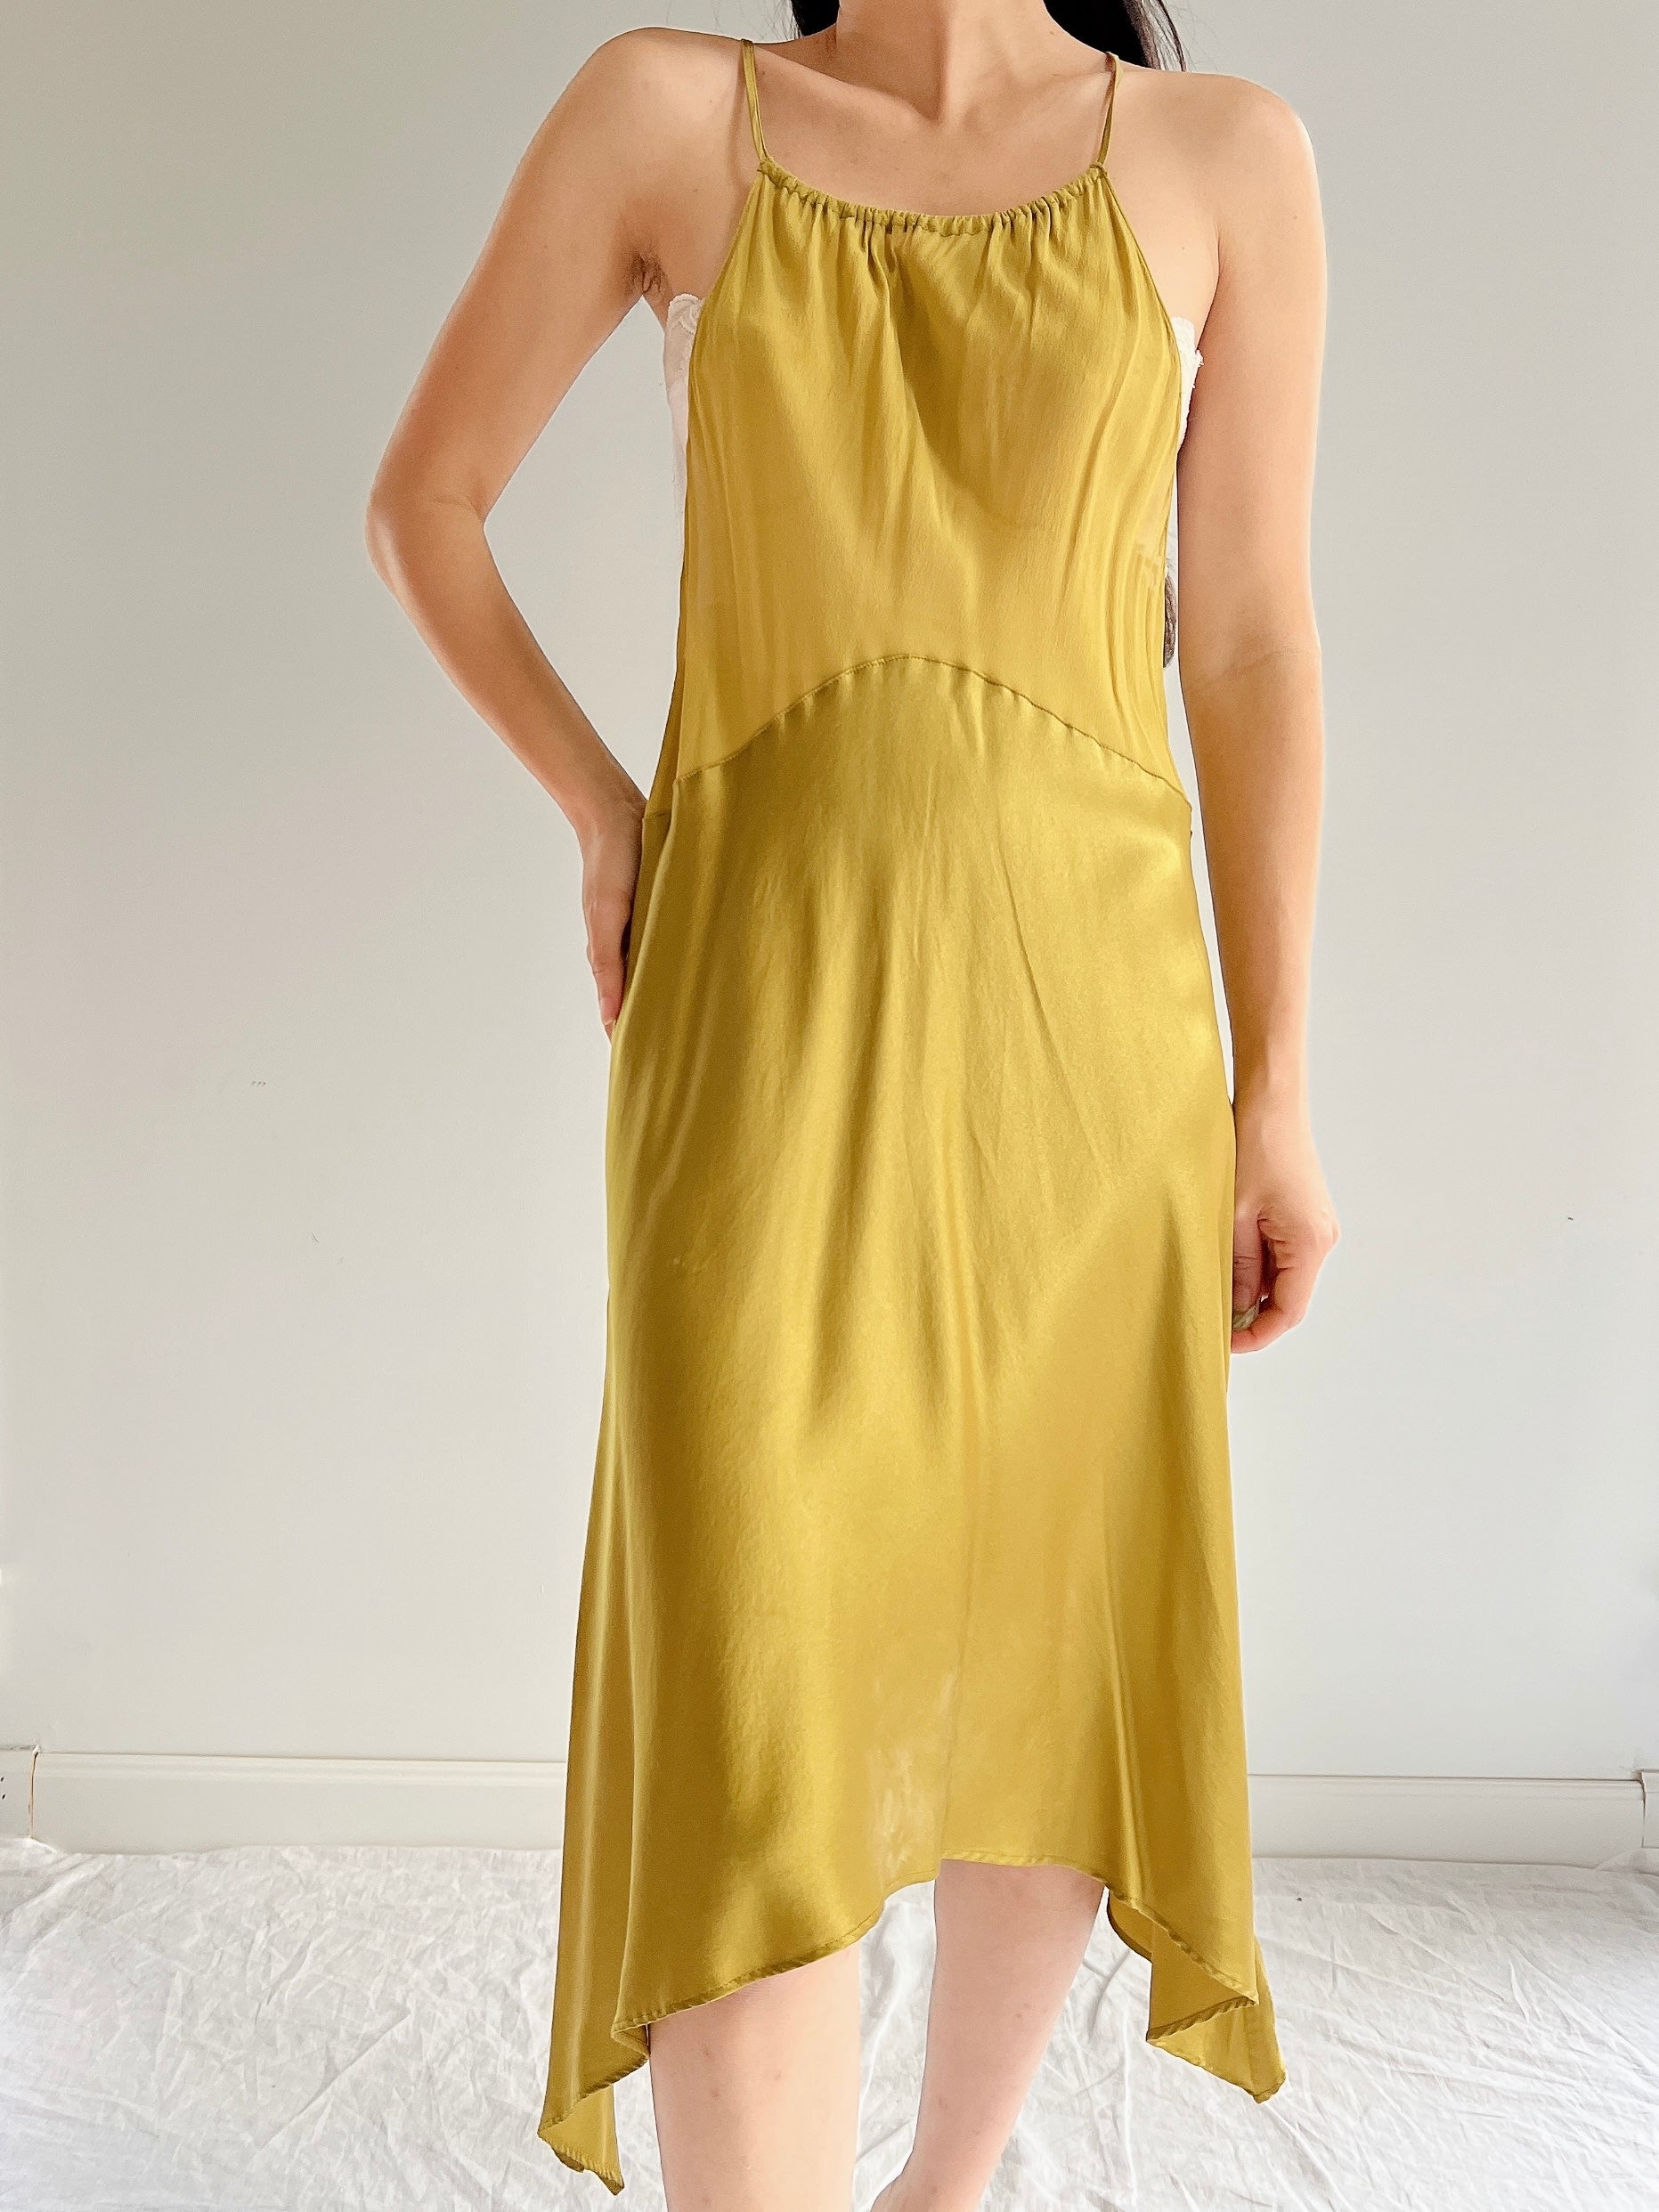 Vintage Moss Green Silk Dress - M | G O S S A M E R